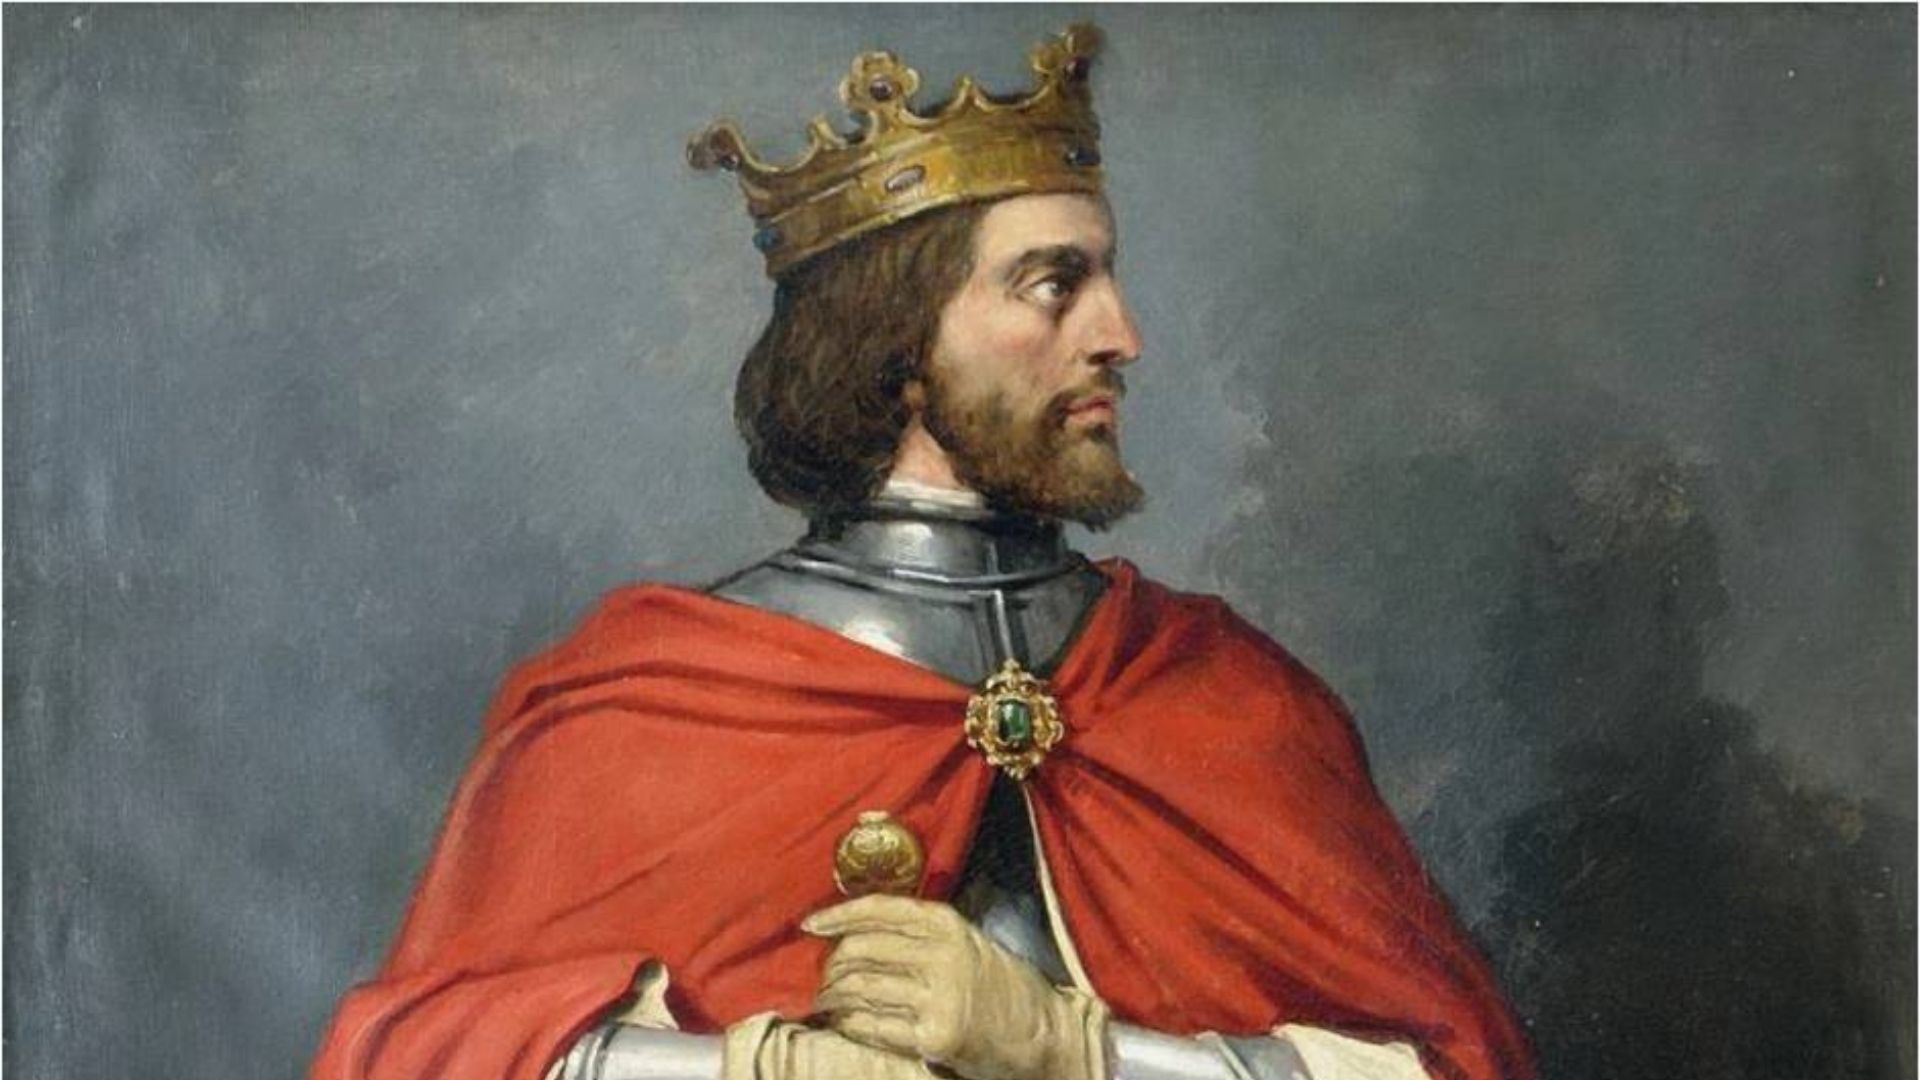 Retrato del Rey Alfonso XI de Castilla